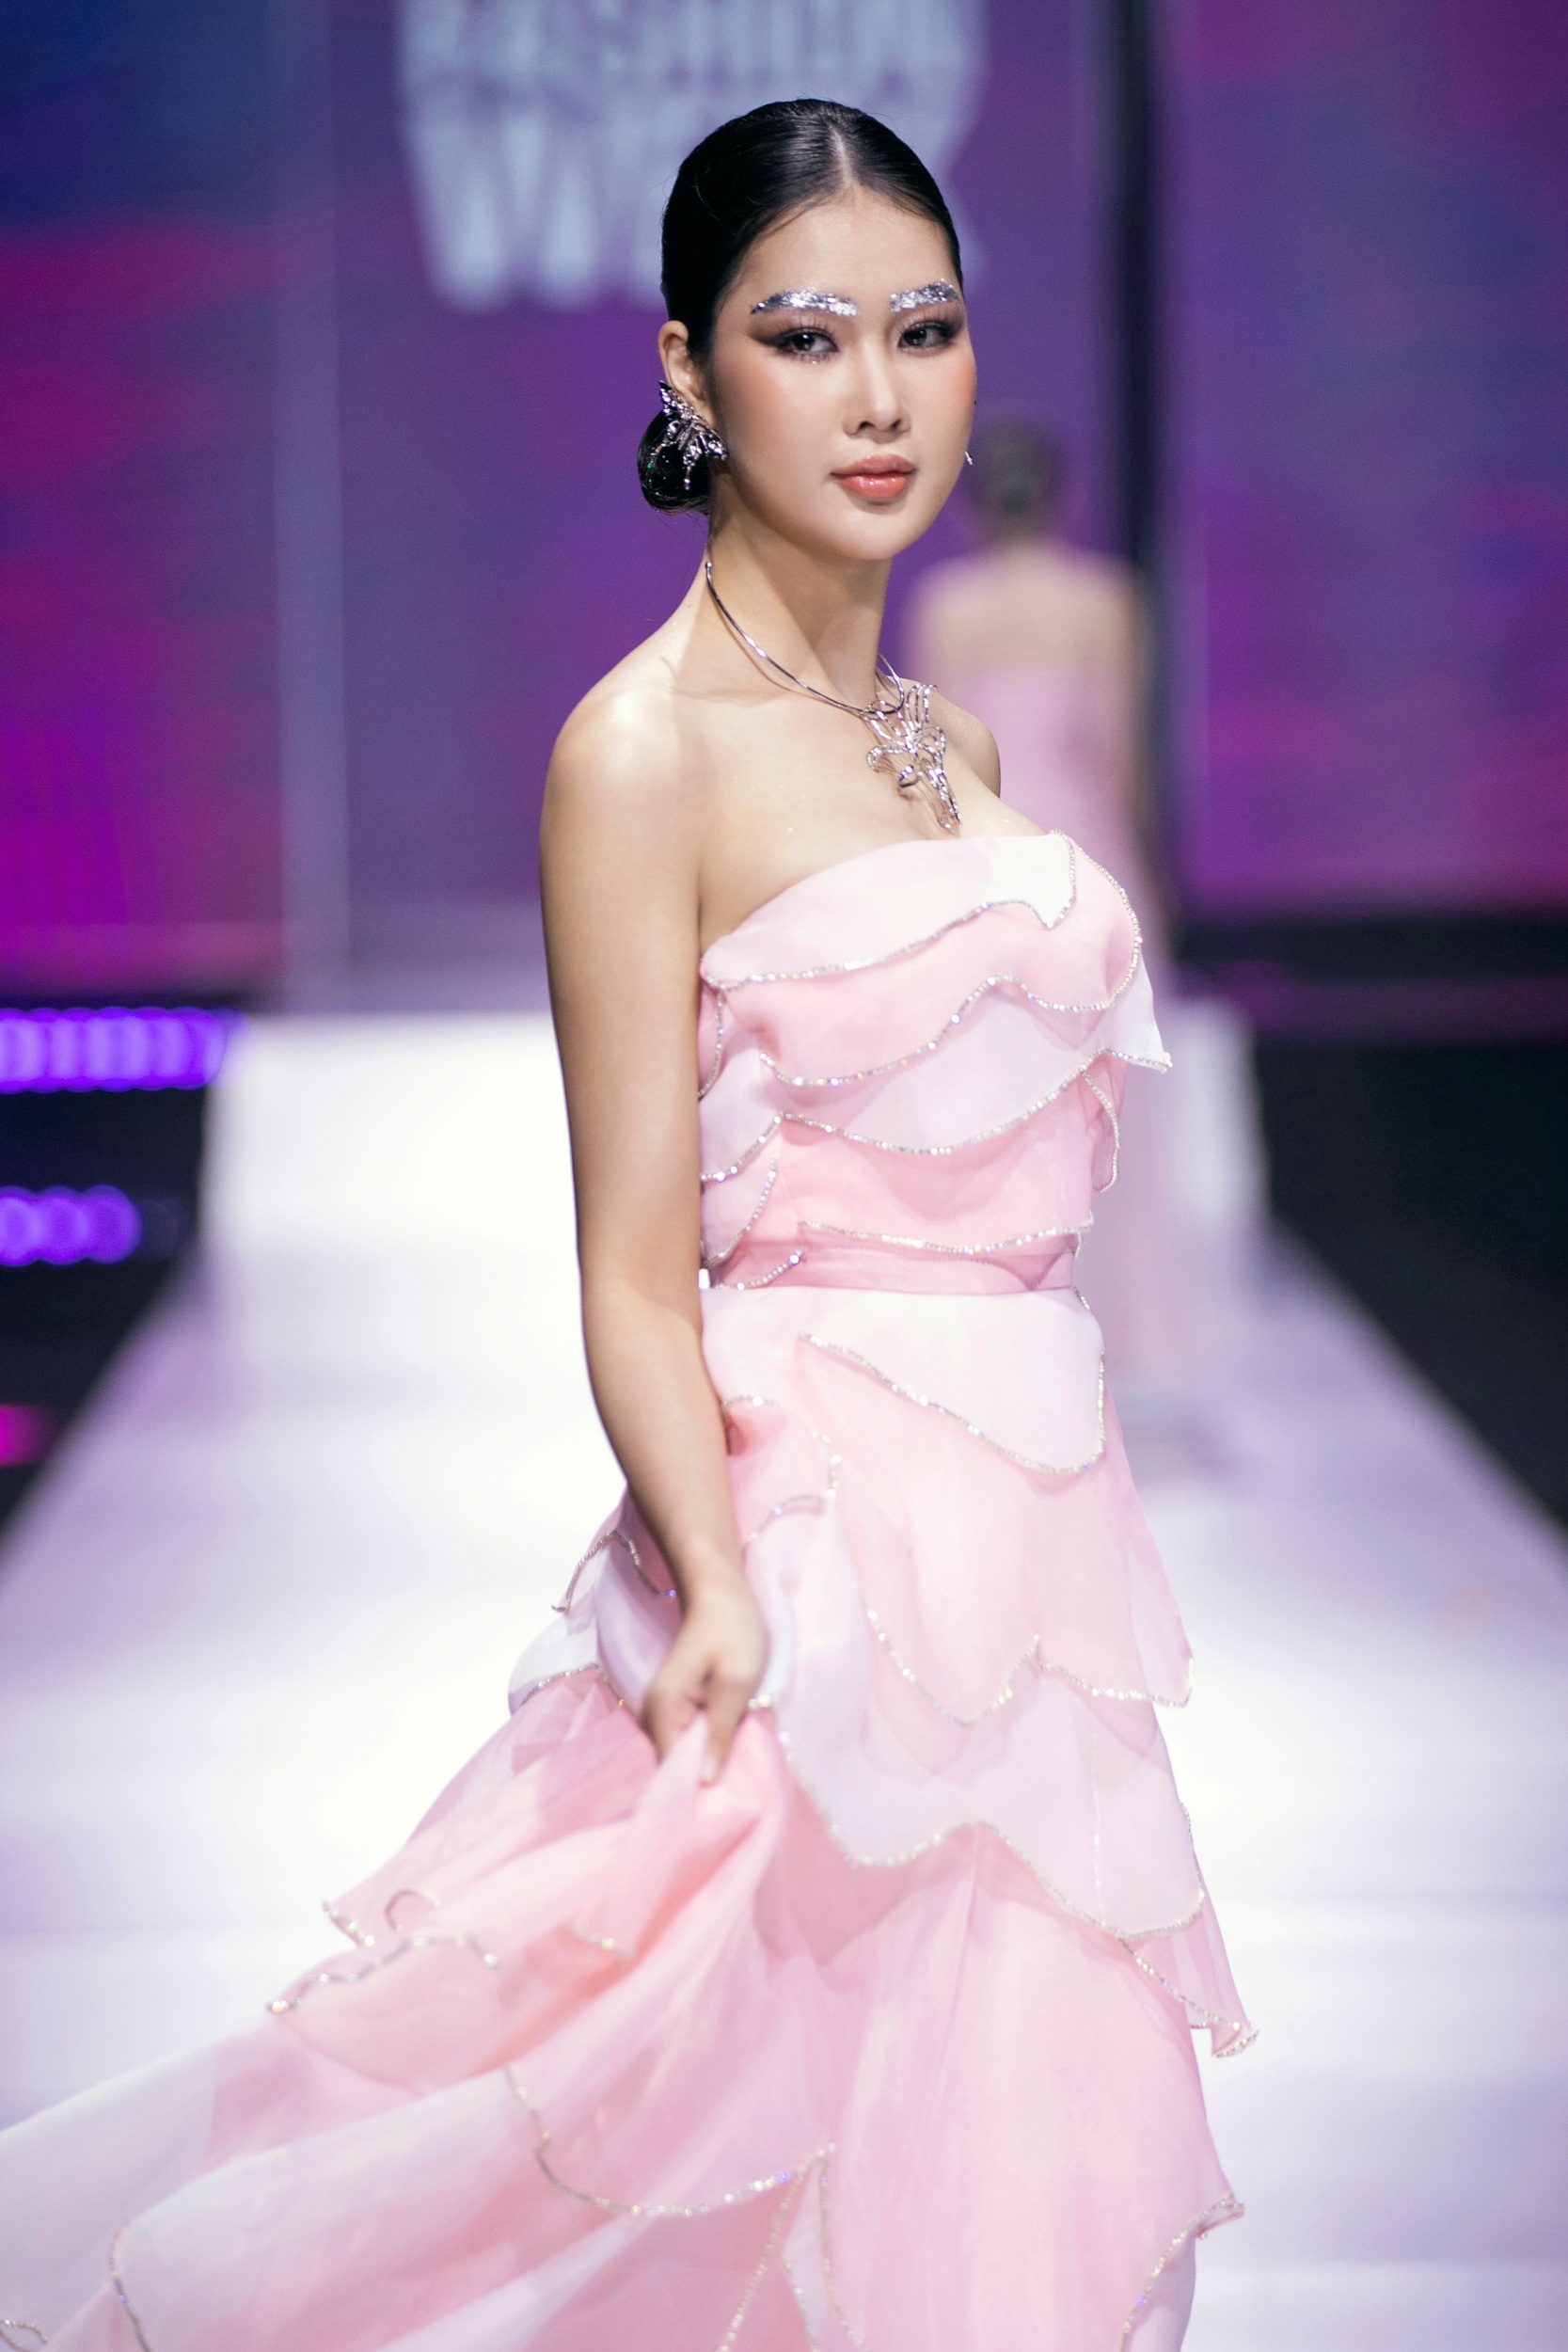 HHen Niê, Quỳnh Châu catwalk trong trang phục cảm hứng mây trời - 10